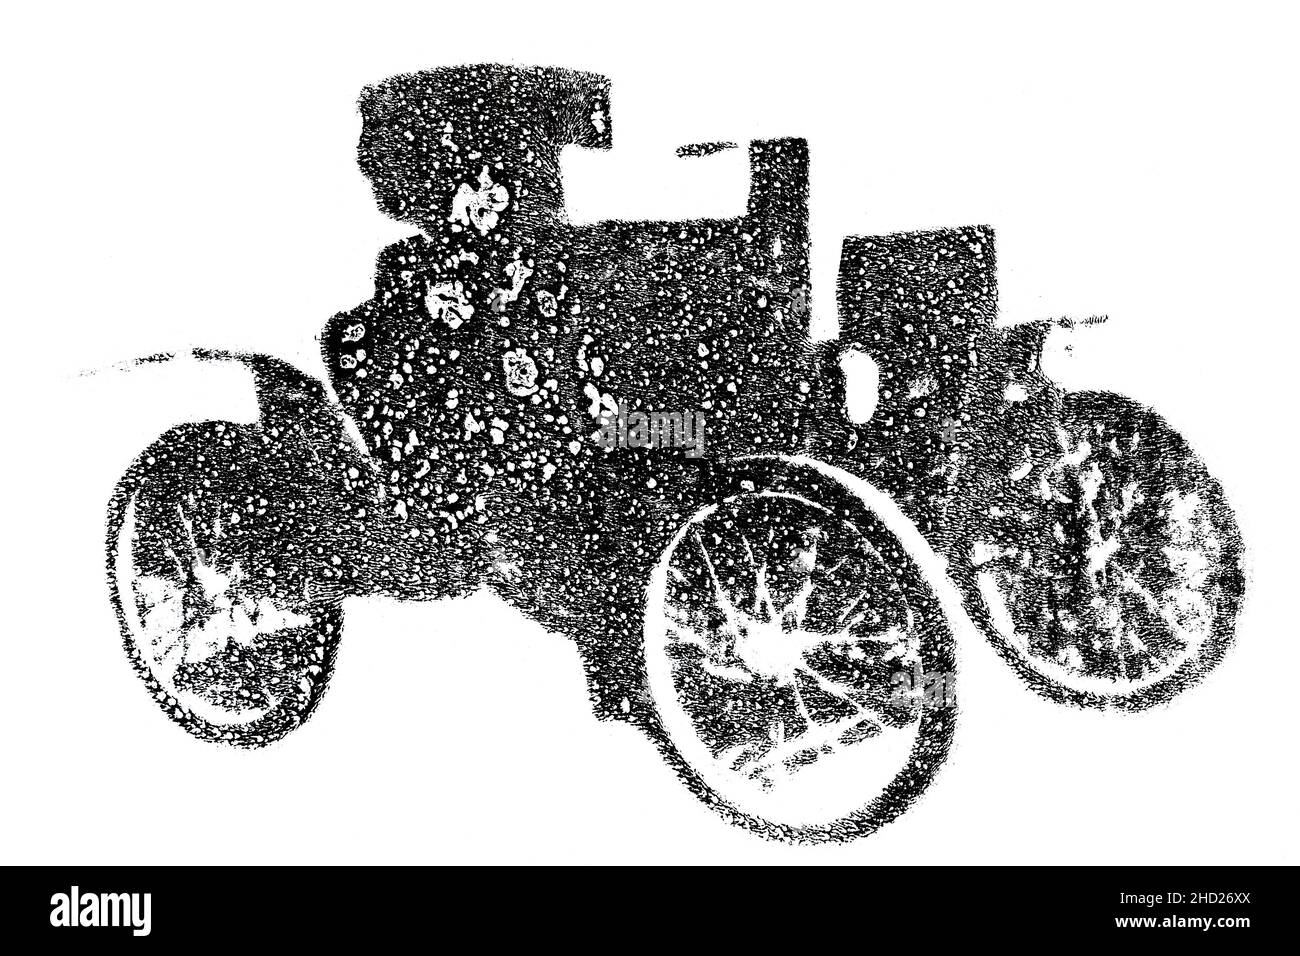 Old automobile. Handmade illustration isolated on white background Stock Photo